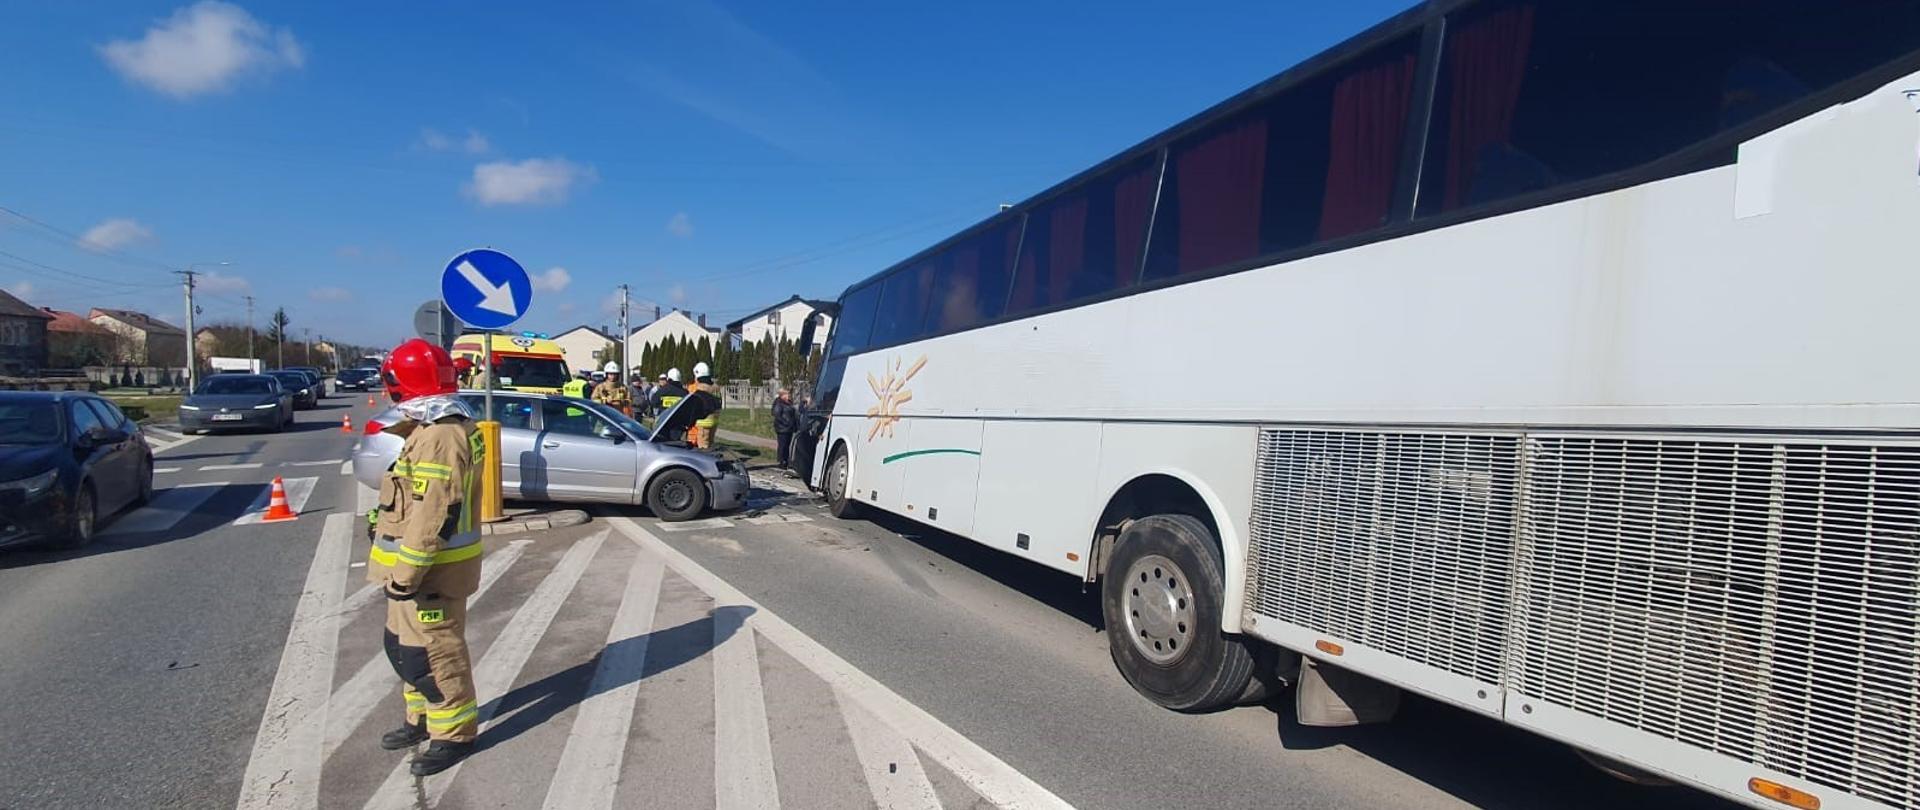 Zdjęcie przedstawia po prawej stronie stojący na pasie jezdni uszkodzony autobus turystyczny, a przed nim, ustawiony do niego prostopadle samochód osobowy. Na drodze stoi strażak, a w głębi widać ambulans.